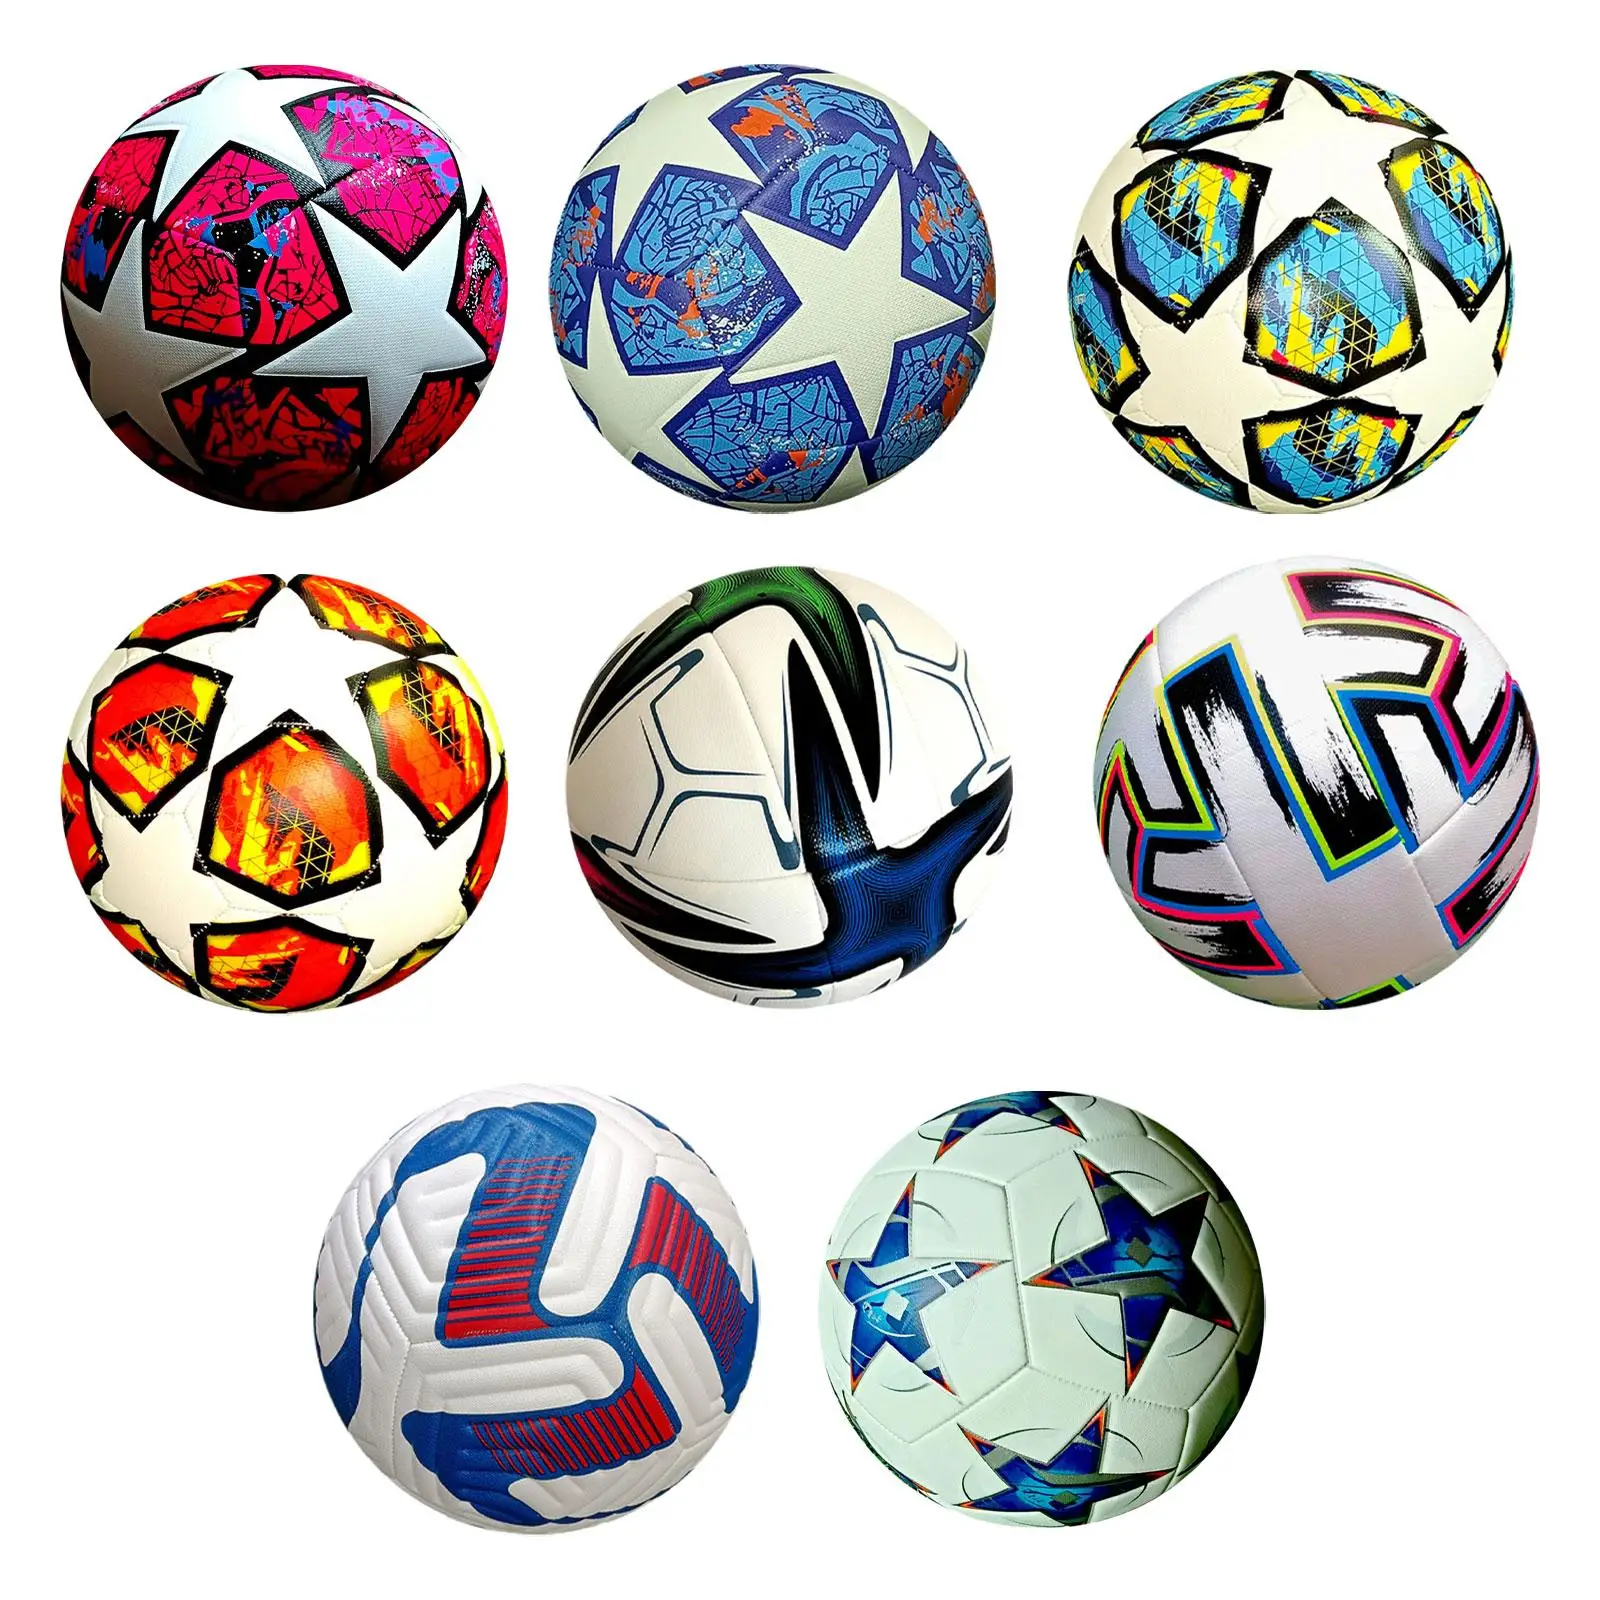 

Футбольный мяч, размер 5, тренировочный мяч, спортивный мяч, официальный мяч для матча